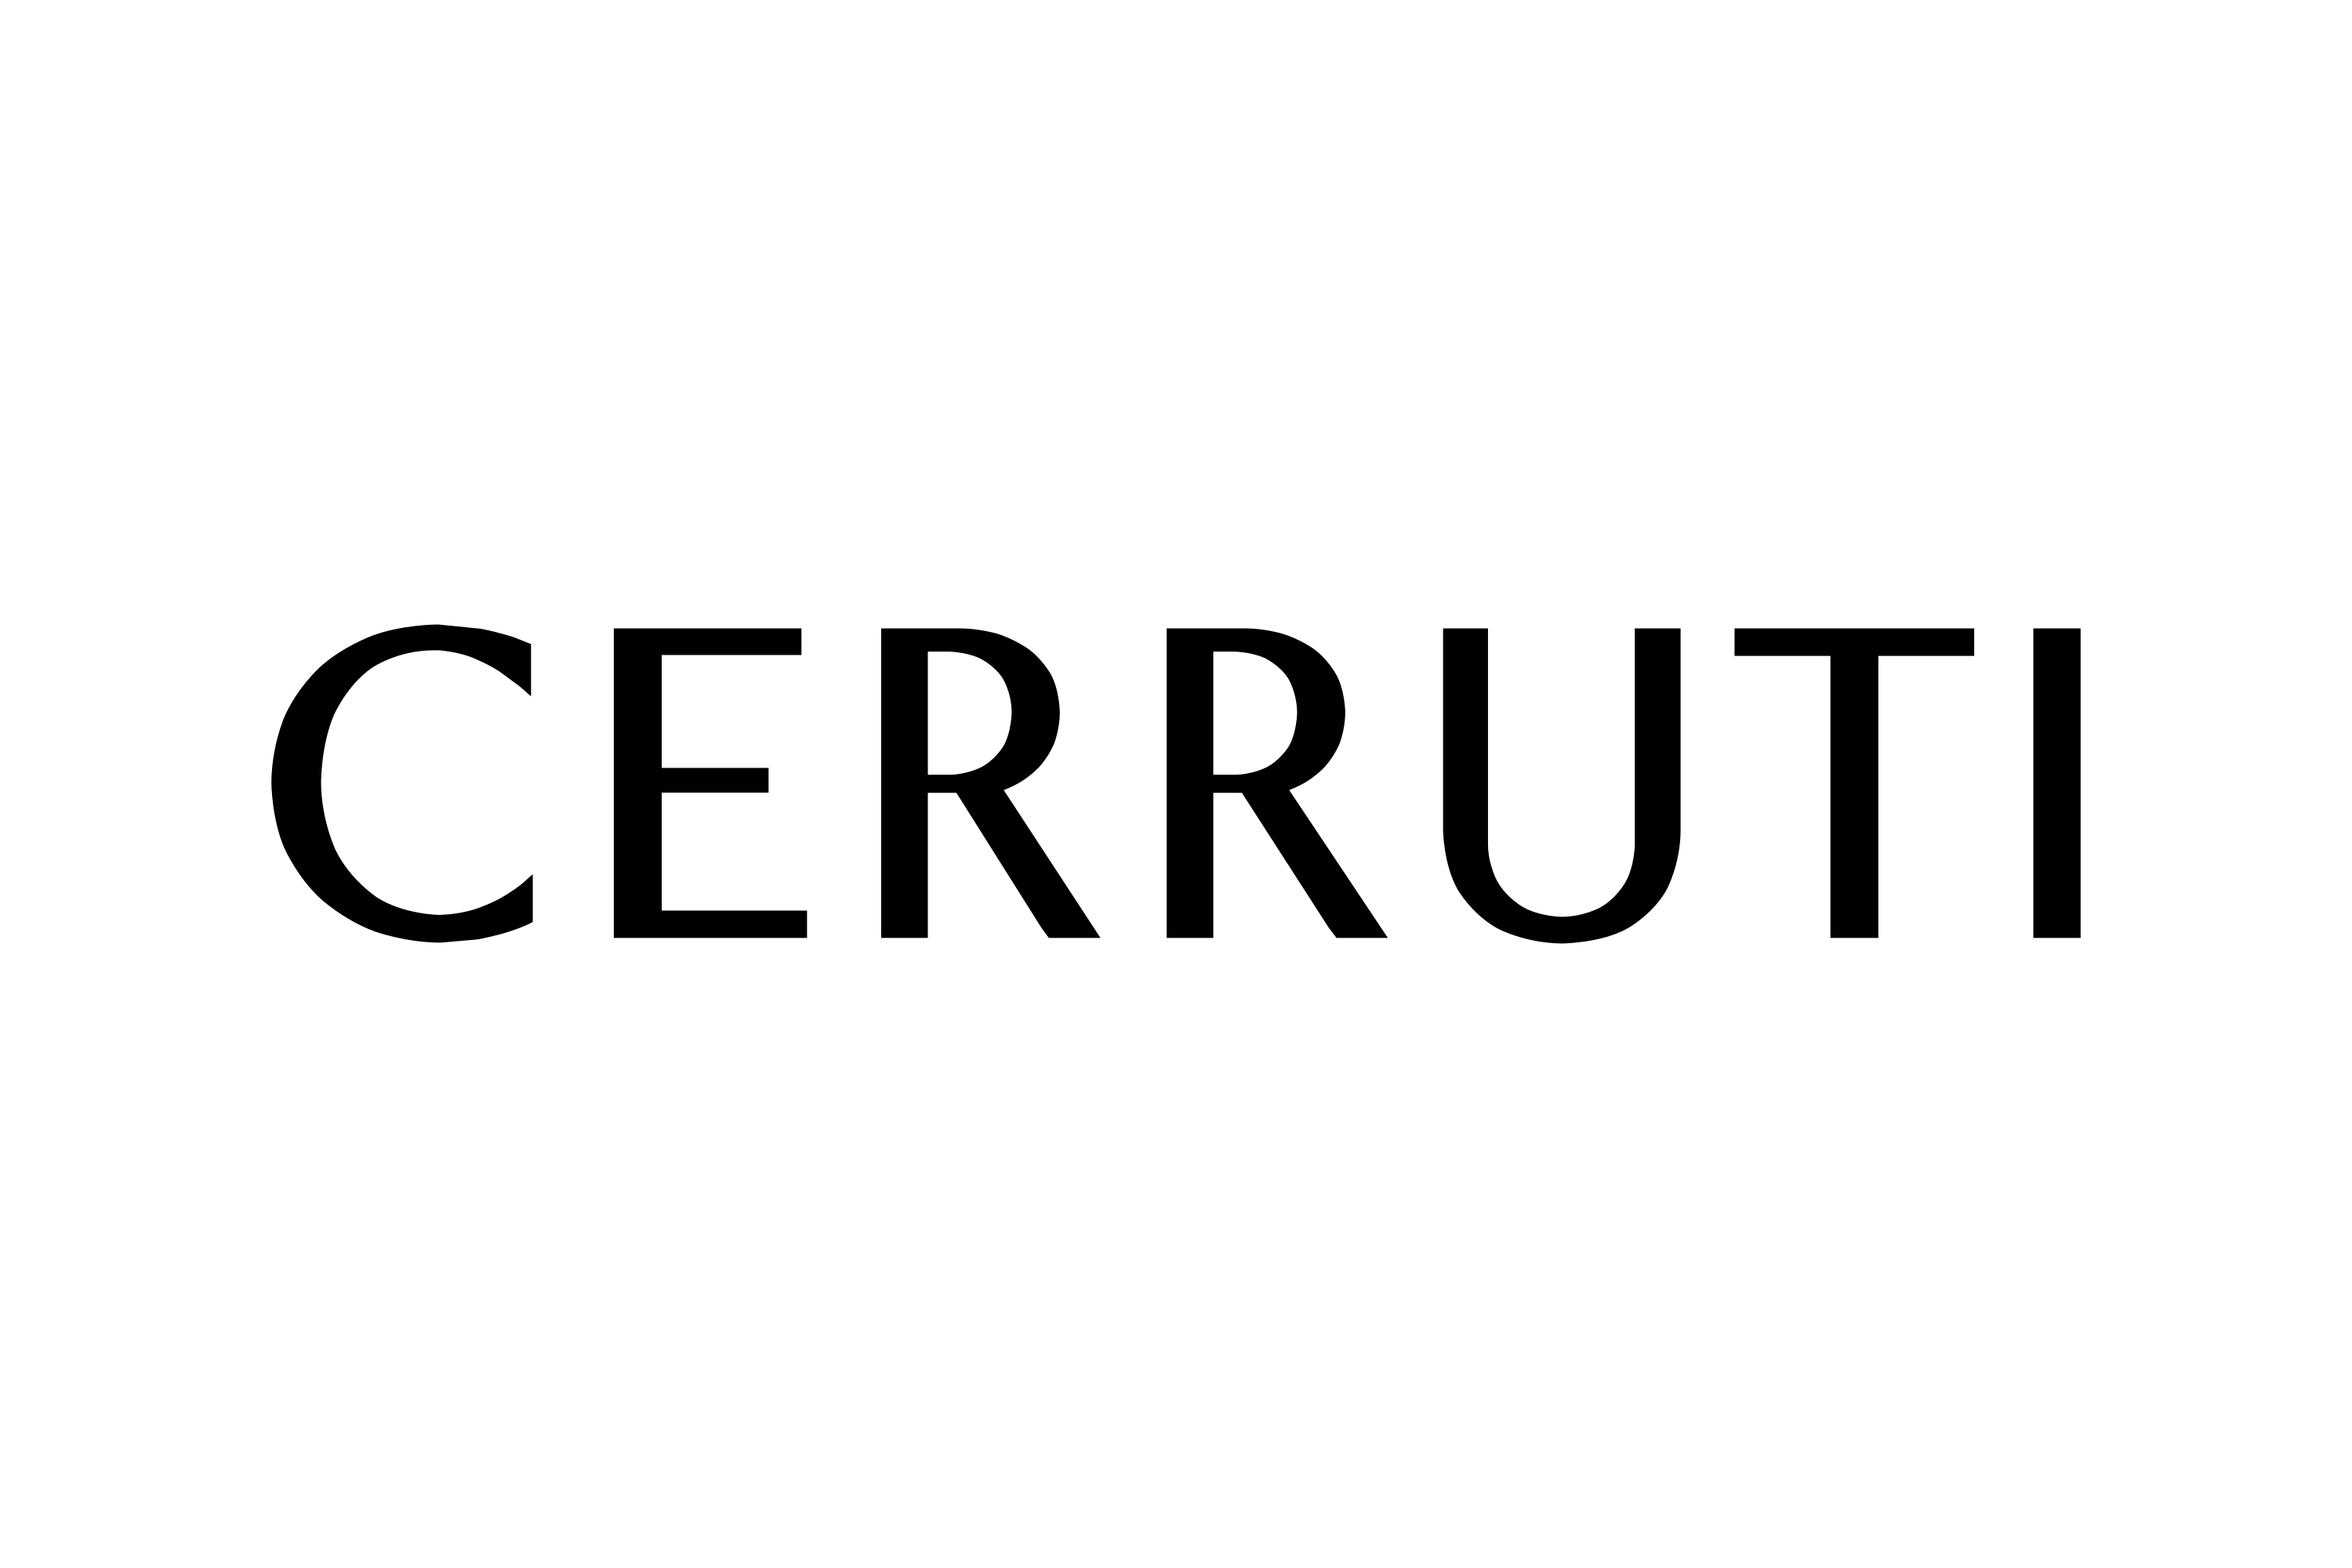 Download Cerruti Logo in SVG Vector or PNG File Format - Logo.wine